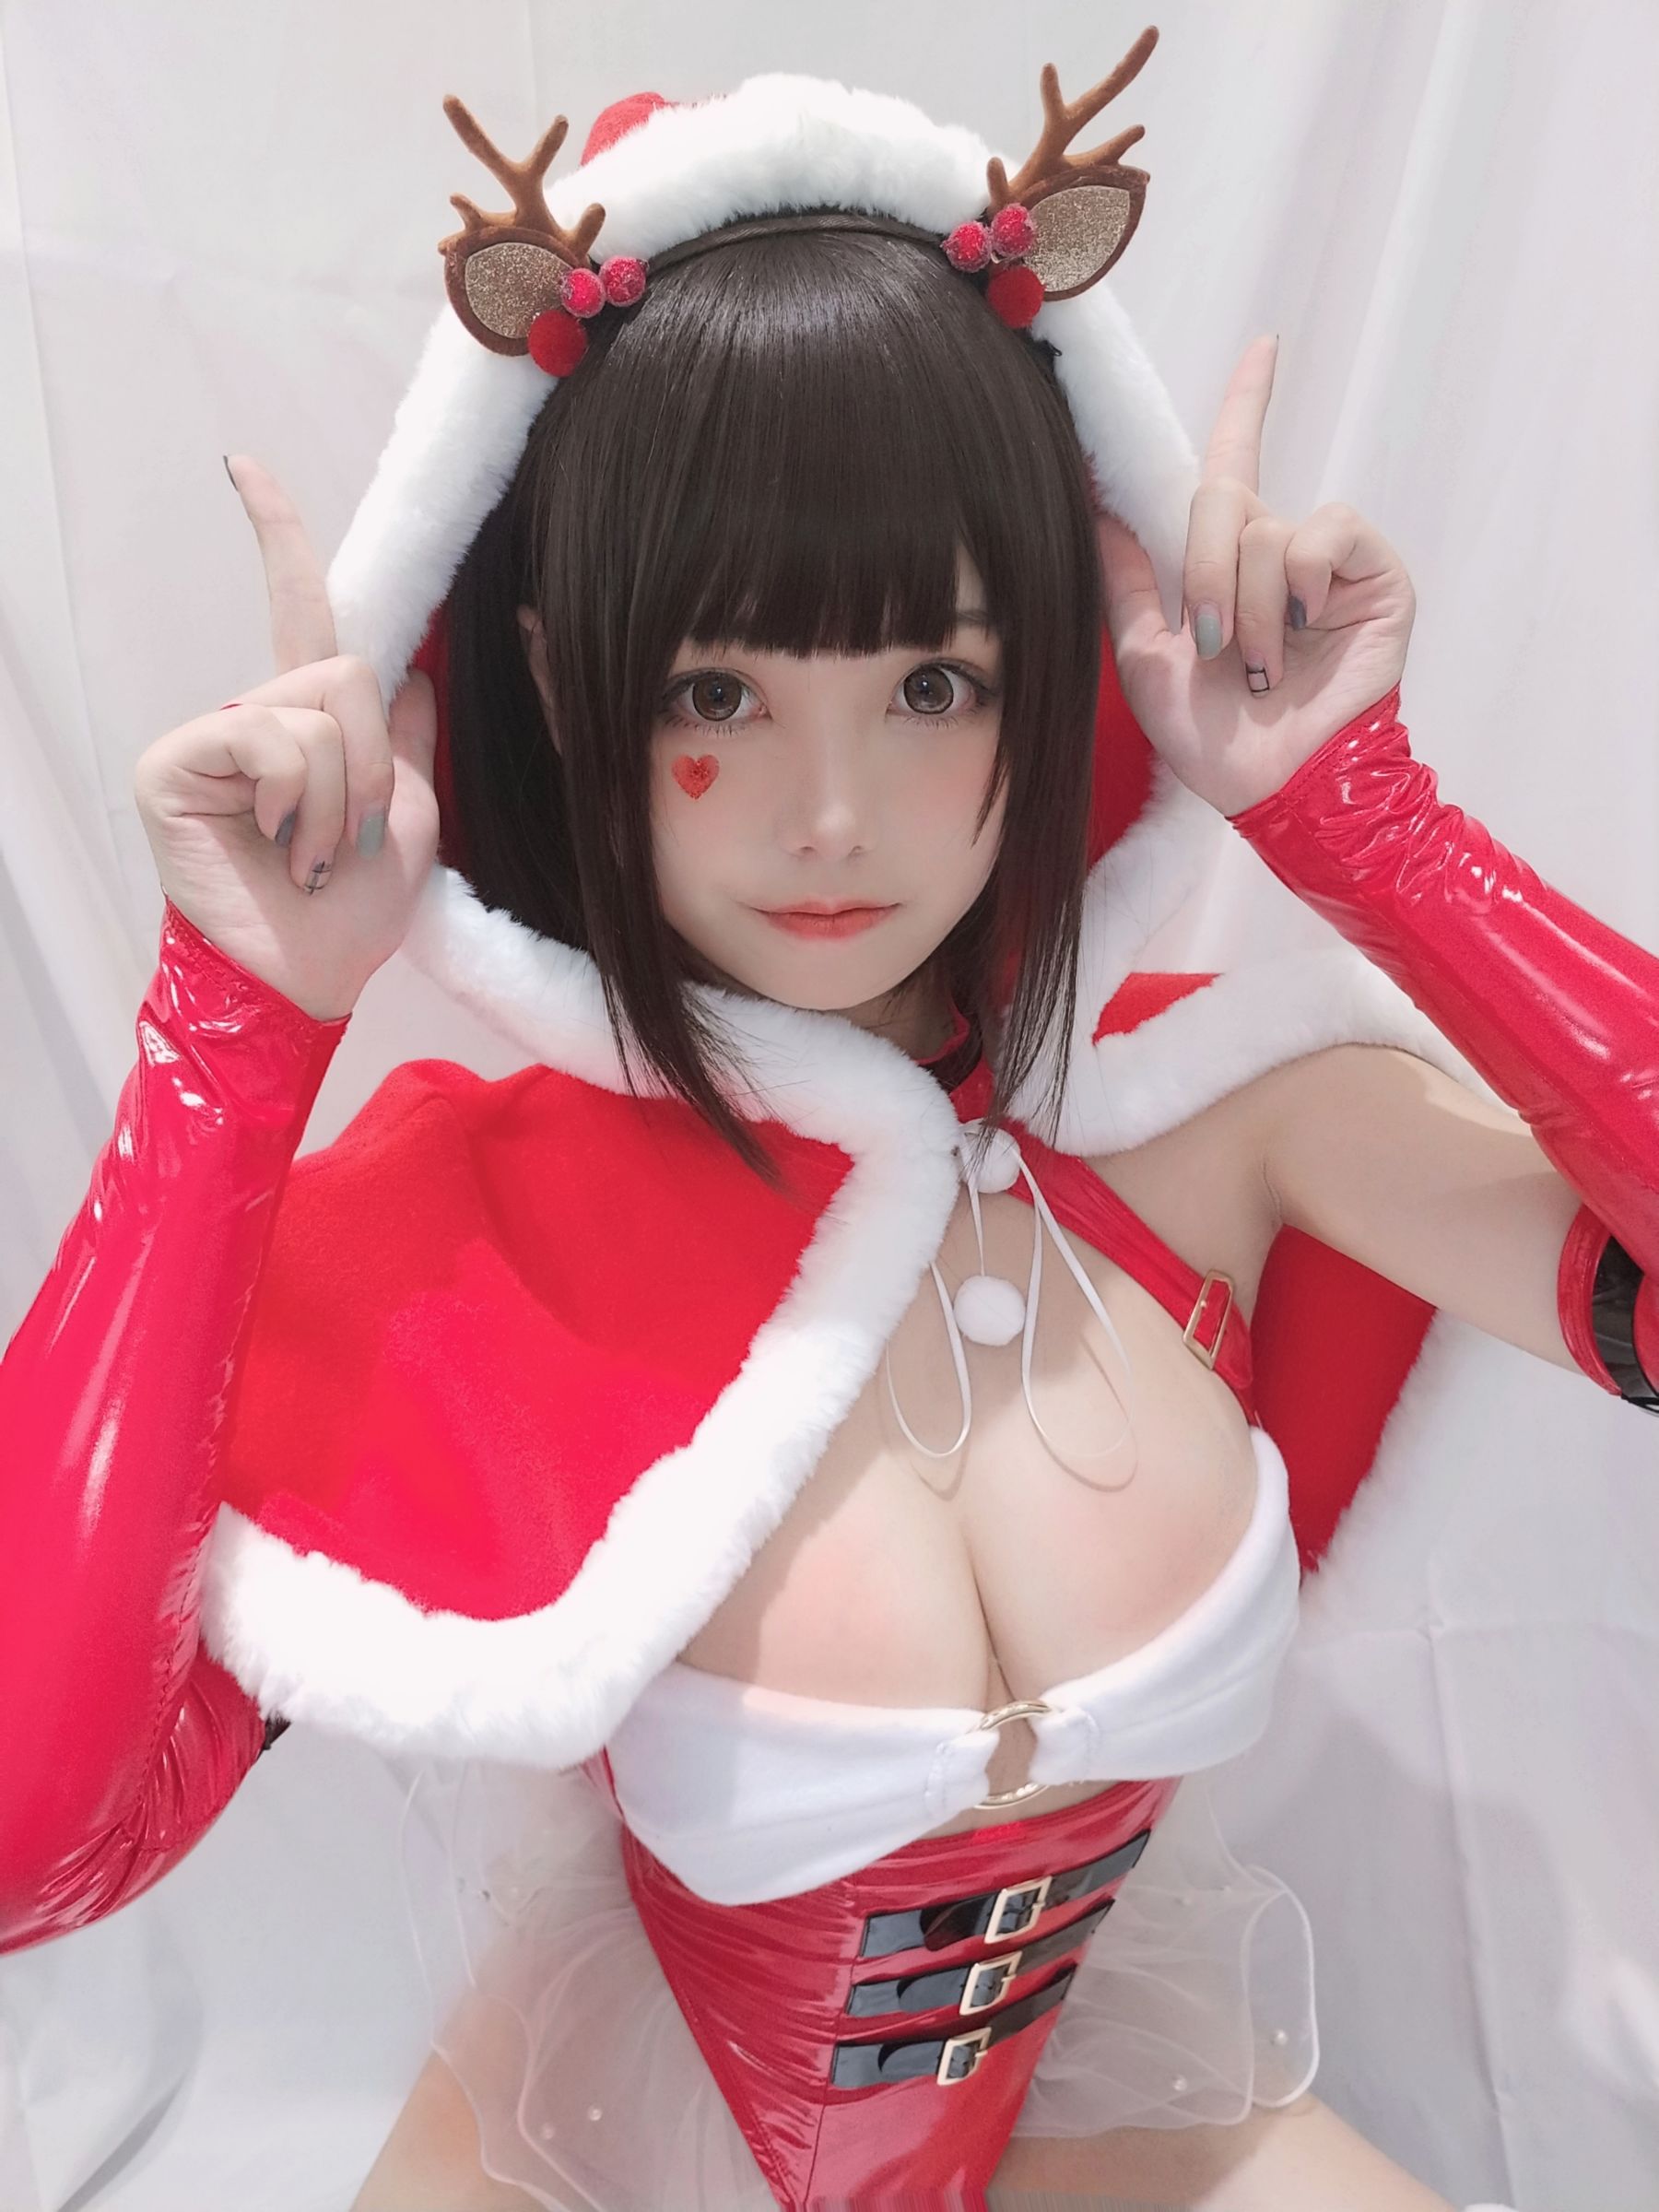 [Cosplay写真] 萌系小姐姐蜜汁猫裘 - 圣诞自拍